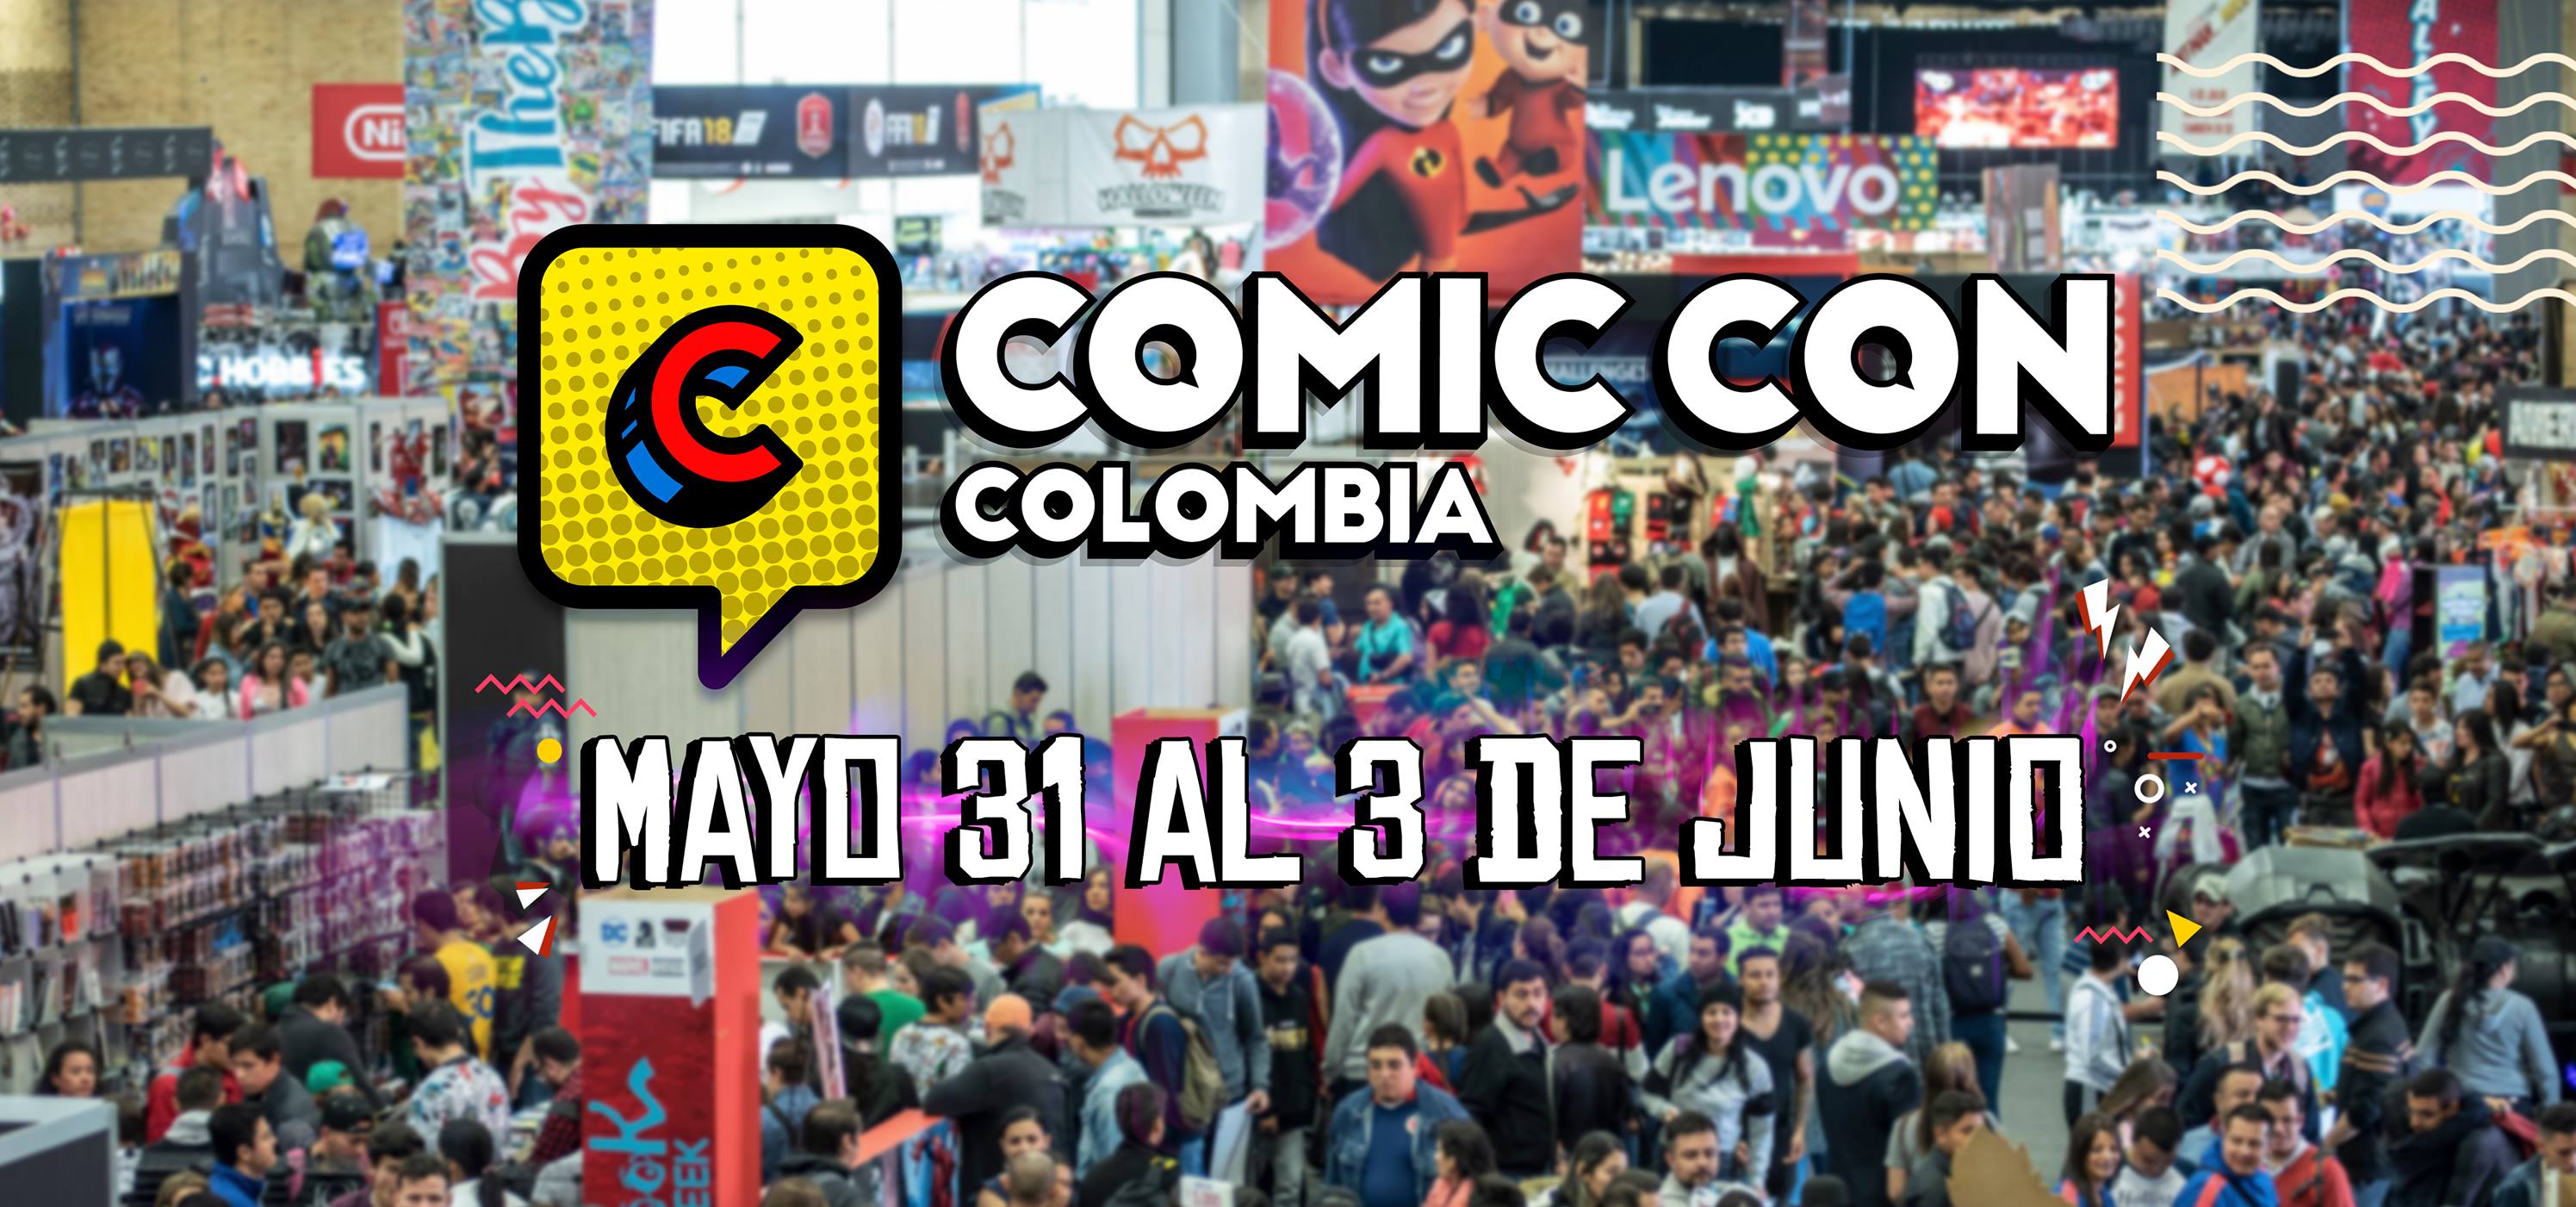 Comic Con Colombia 2019 en Bogotá